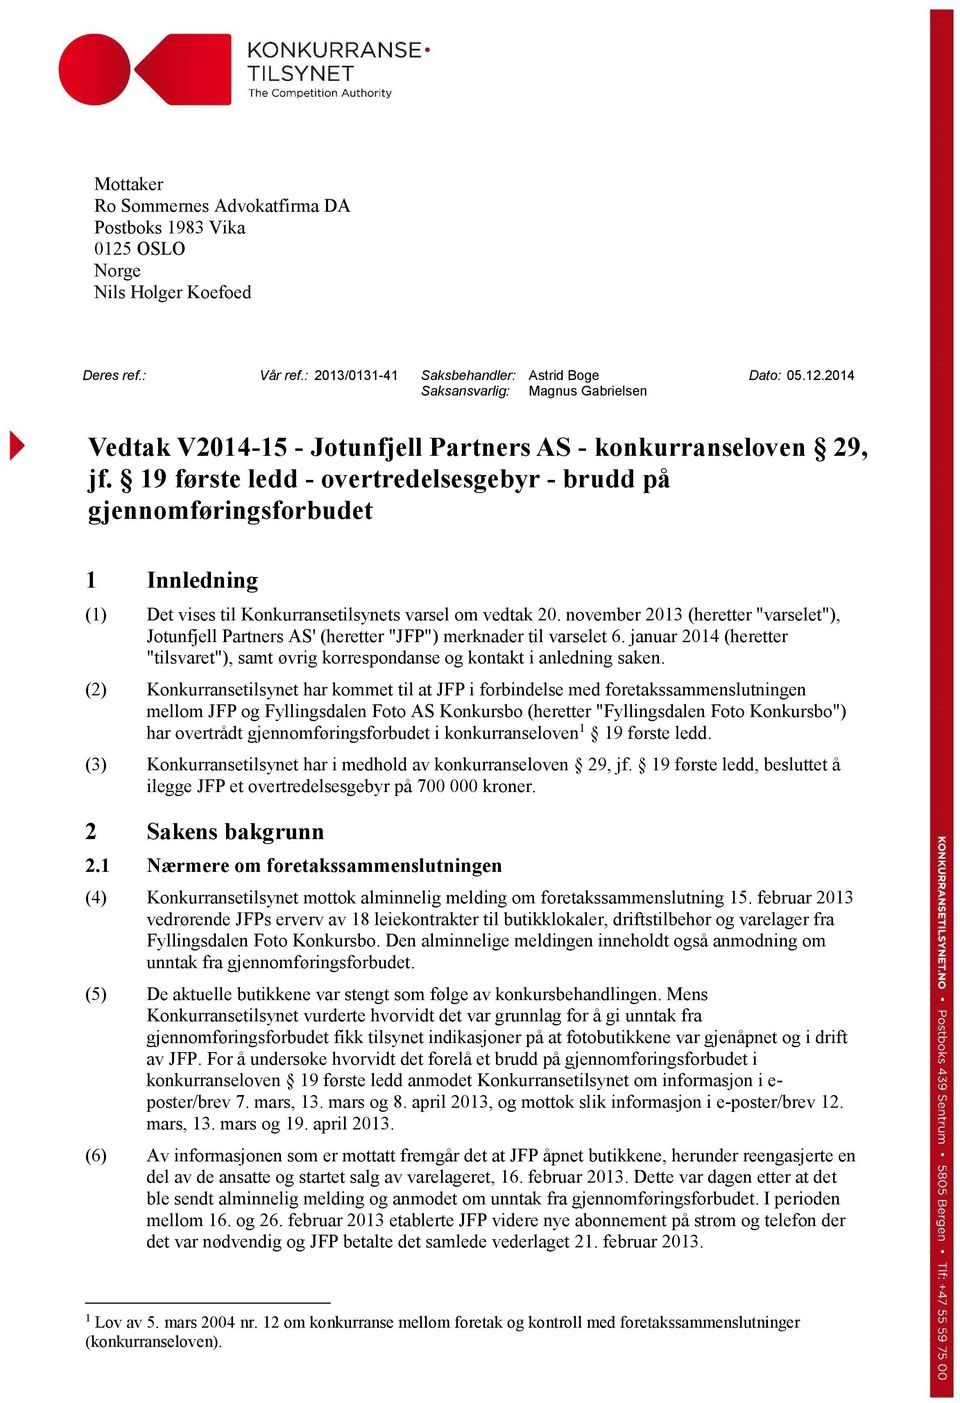 november 2013 (heretter "varselet"), Jotunfjell Partners AS' (heretter "JFP") merknader til varselet 6. januar 2014 (heretter "tilsvaret"), samt øvrig korrespondanse og kontakt i anledning saken.